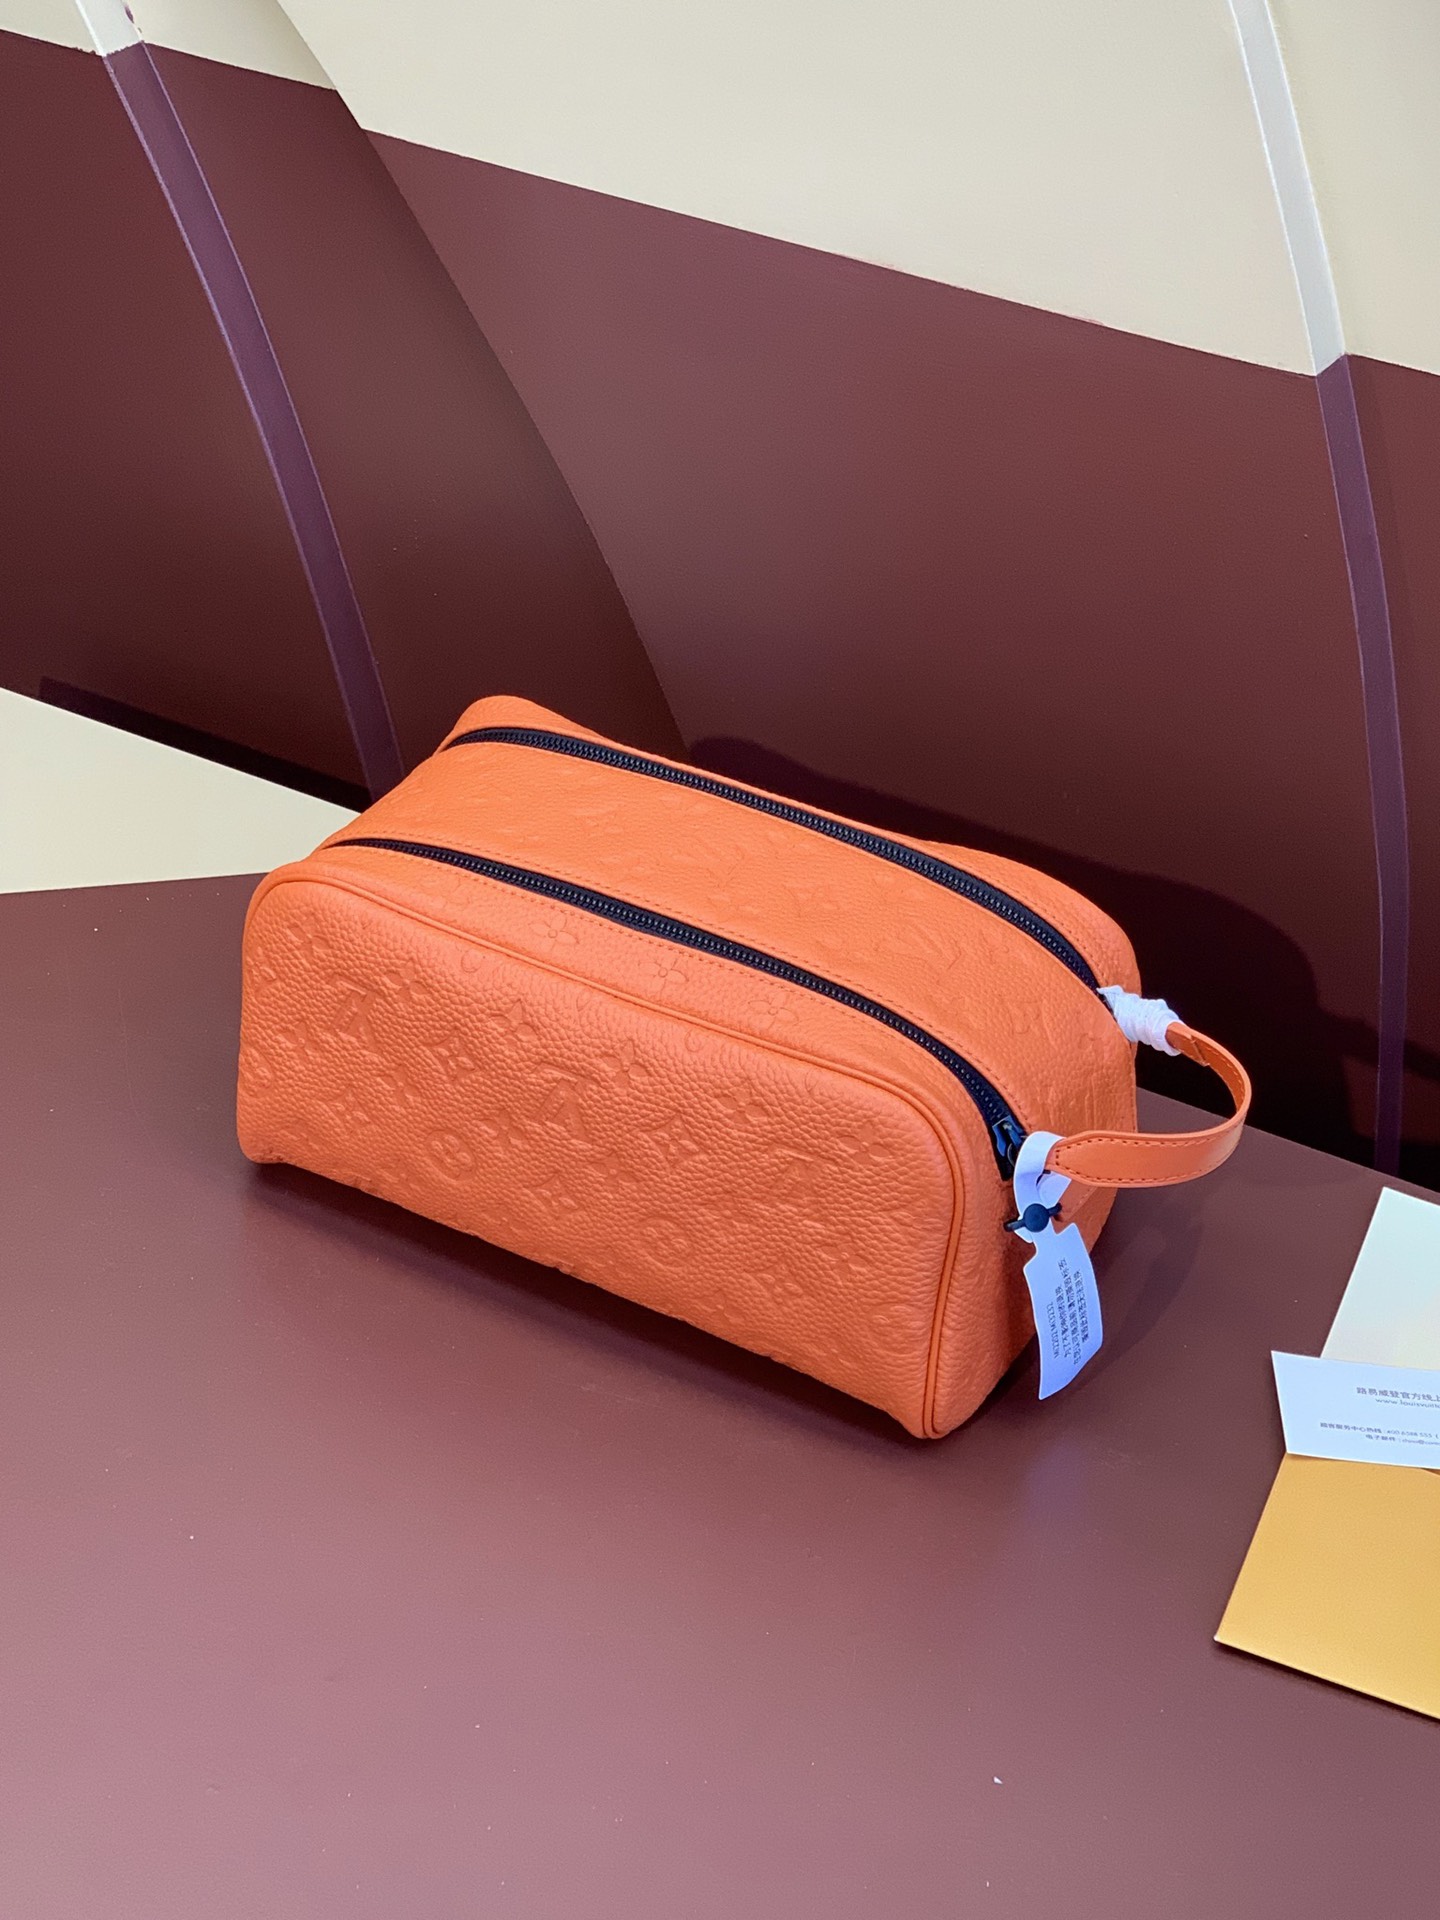 ヴィトン バッグ 色移り激安通販 型番M82576 洗濯バッグ 旅行用 トラベルポーチ 便利 オレンジ色_1